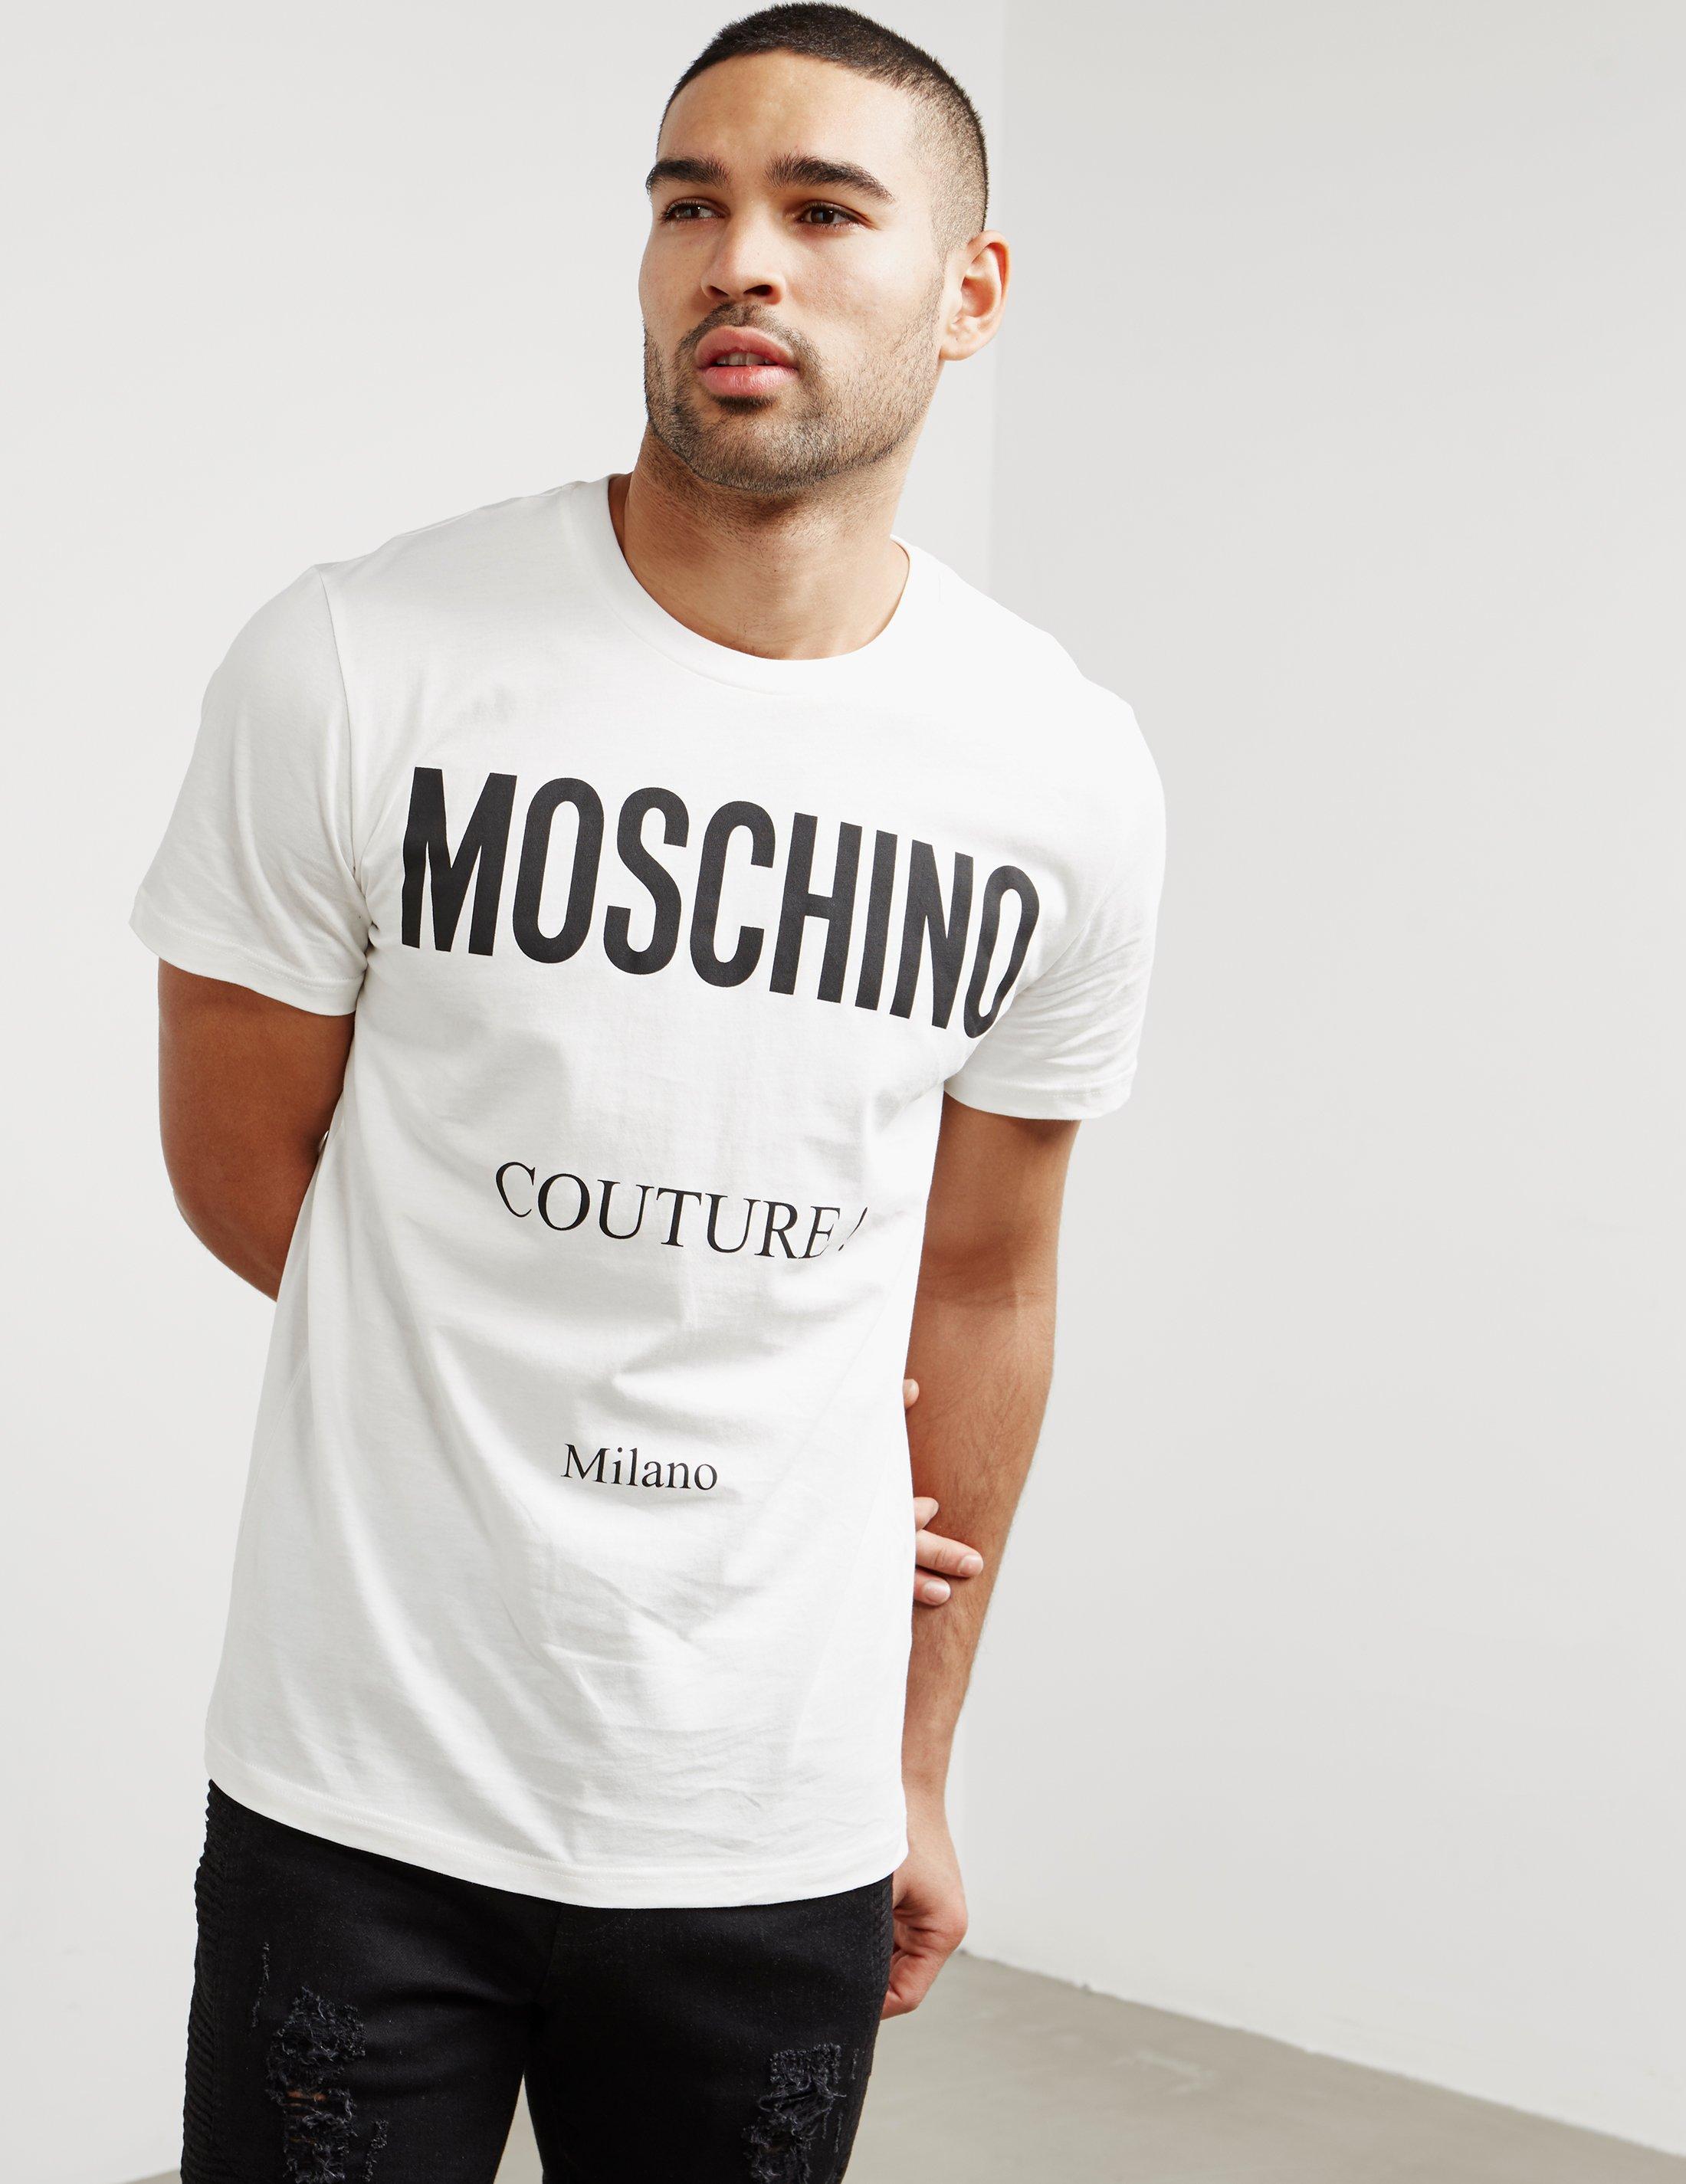 Moschino Couture T Shirt Mens Switzerland, 59% -